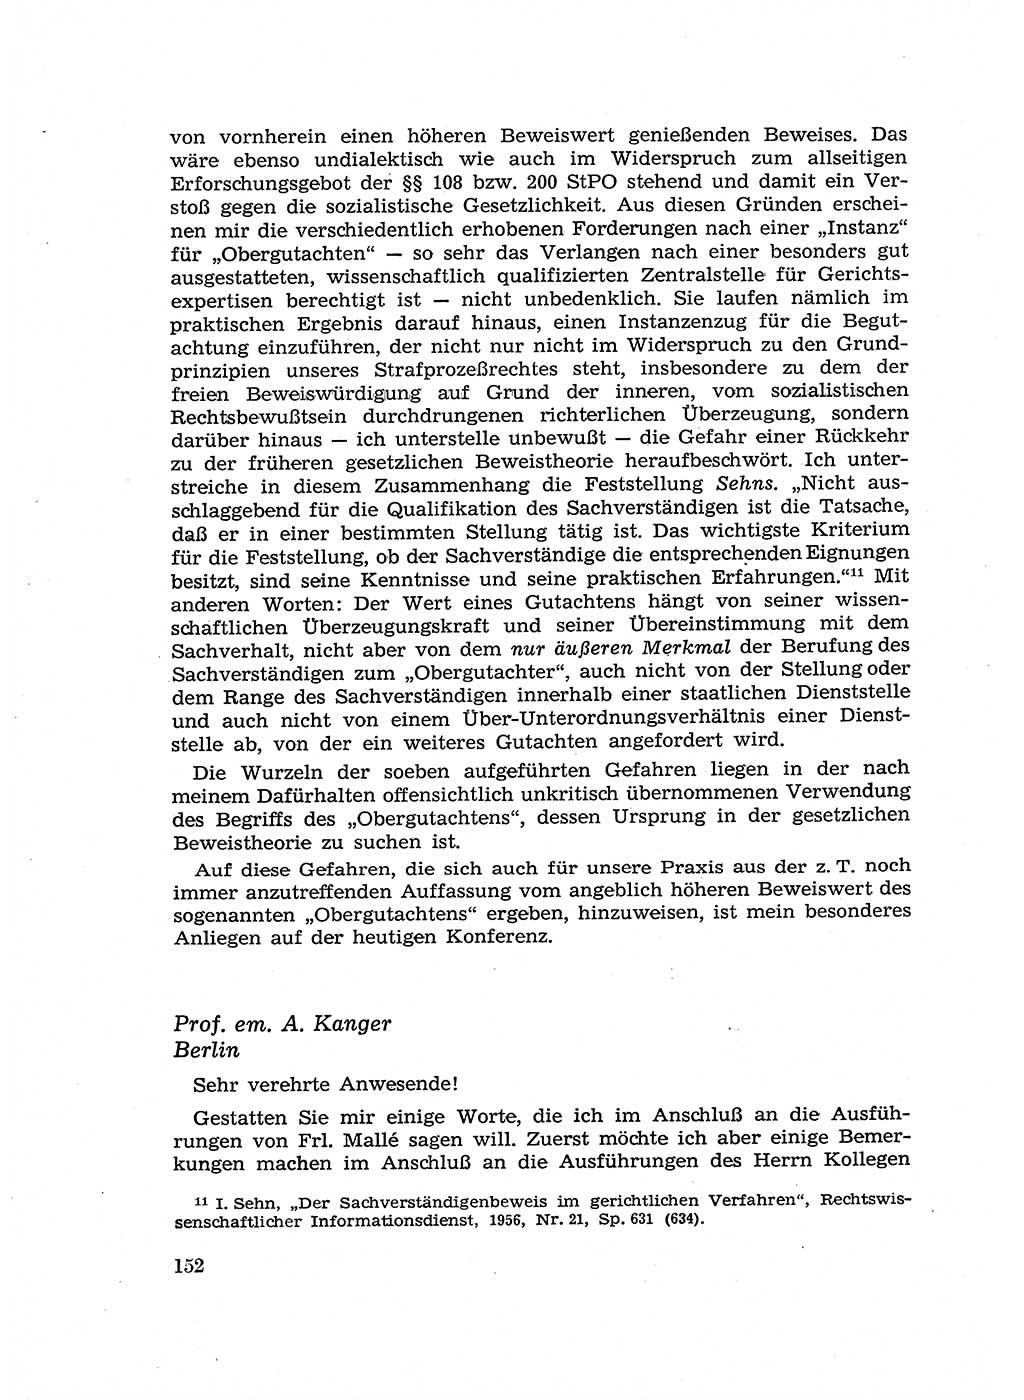 Fragen des Beweisrechts im Strafprozess [Deutsche Demokratische Republik (DDR)] 1956, Seite 152 (Fr. BeweisR. Str.-Proz. DDR 1956, S. 152)